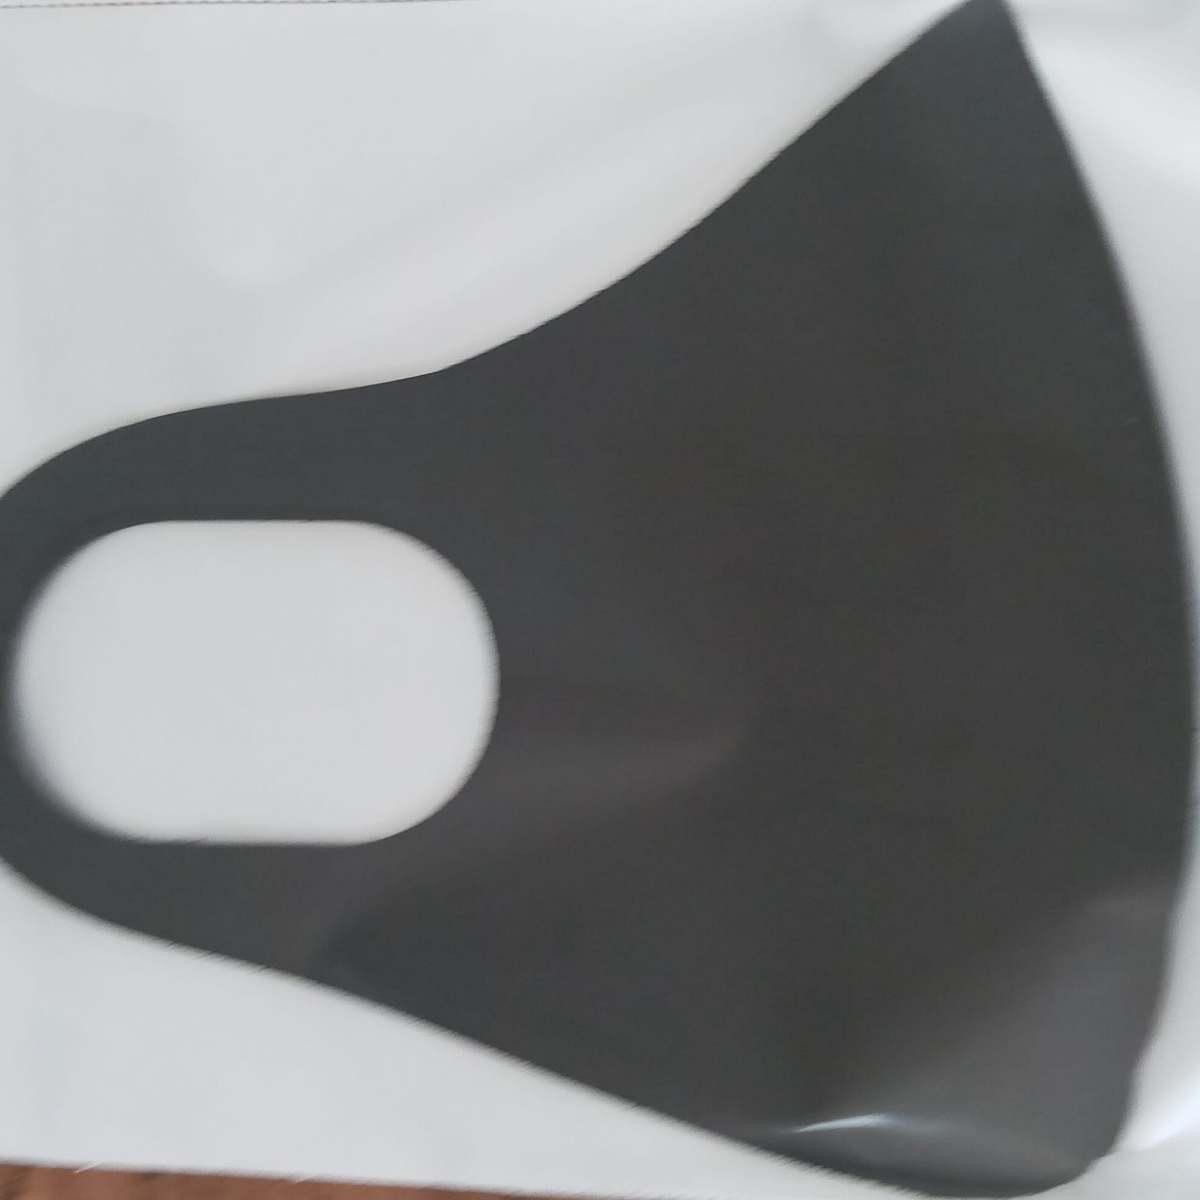 پخش ماسک به قیمت عمدی فقط ۳۰۰۰تومان